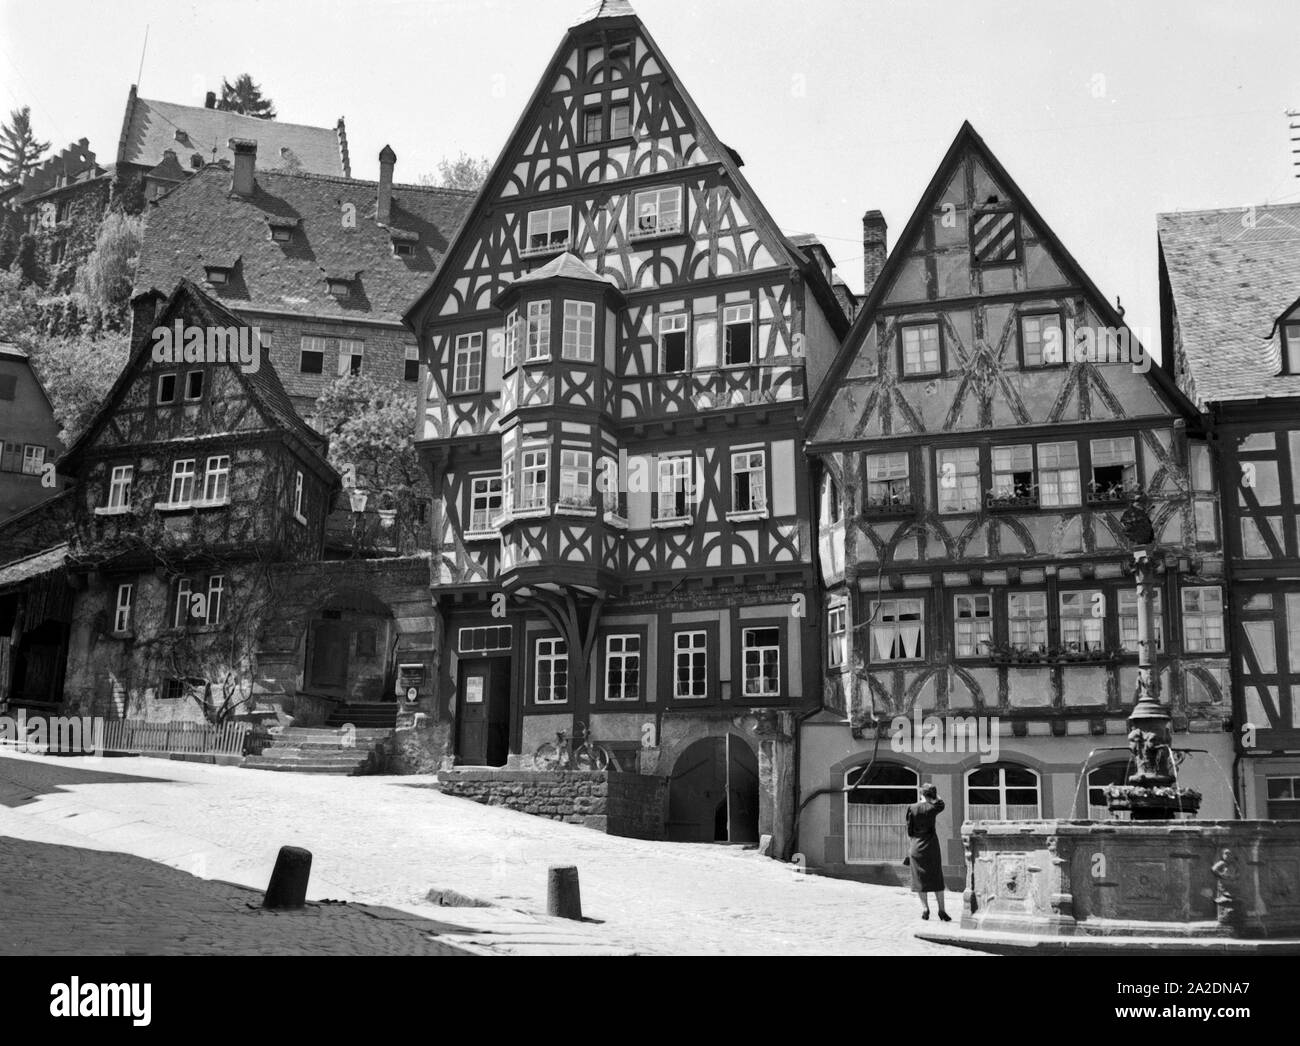 Alte Fachwerkhäuser in Miltenberg, Deutschland 1930er Jahre. Vecchie case con travi di legno a Miltenberg, Germania 1930s. Foto Stock